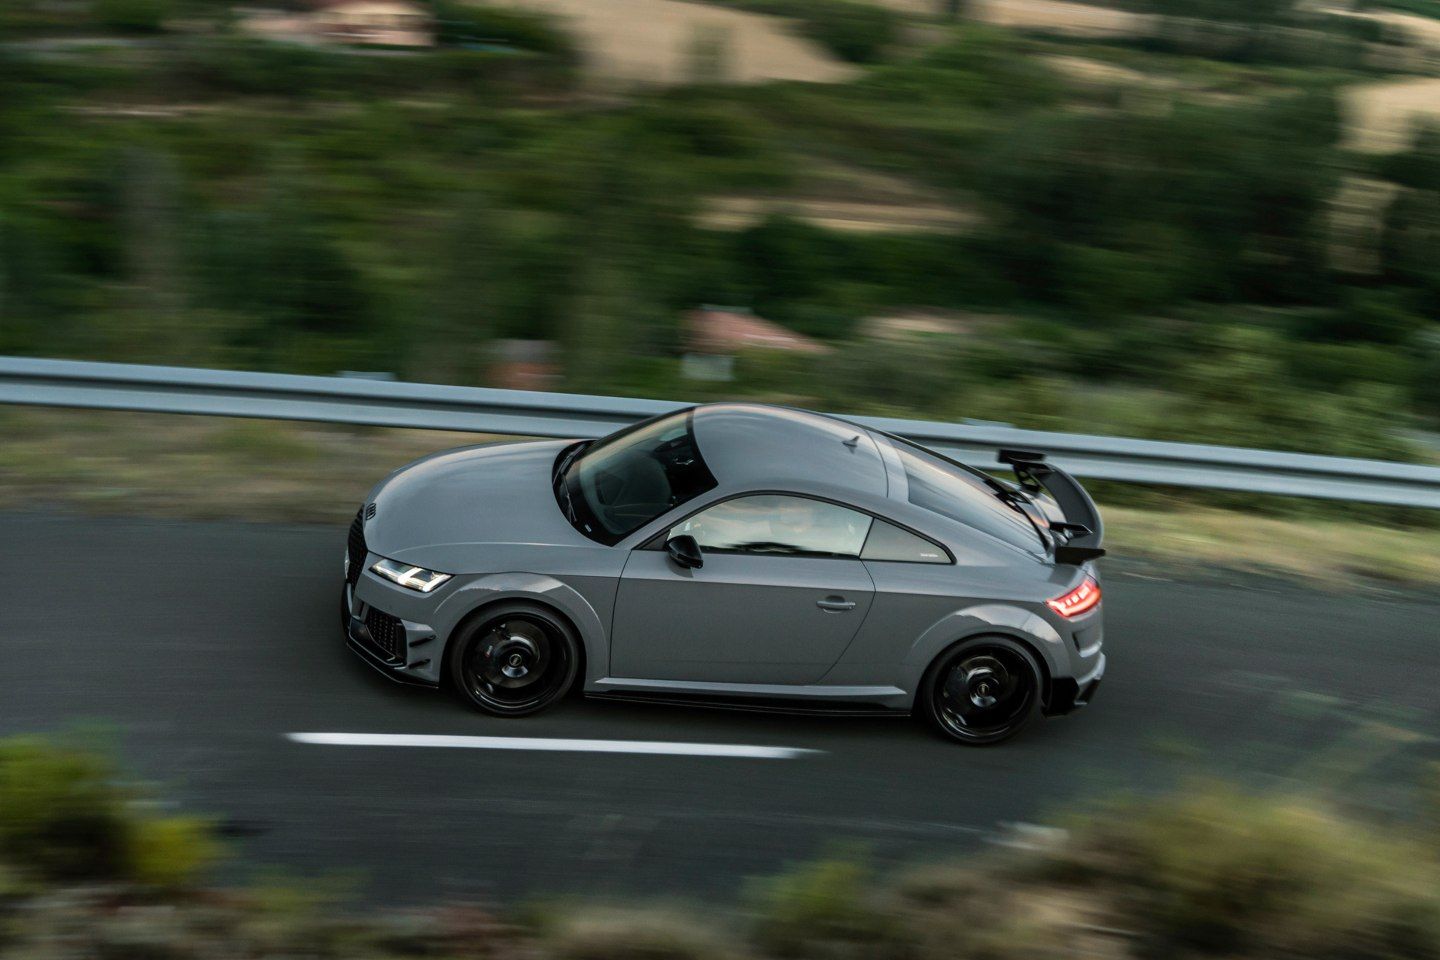 Audi TT quattro Sport  PH Used Review - PistonHeads UK